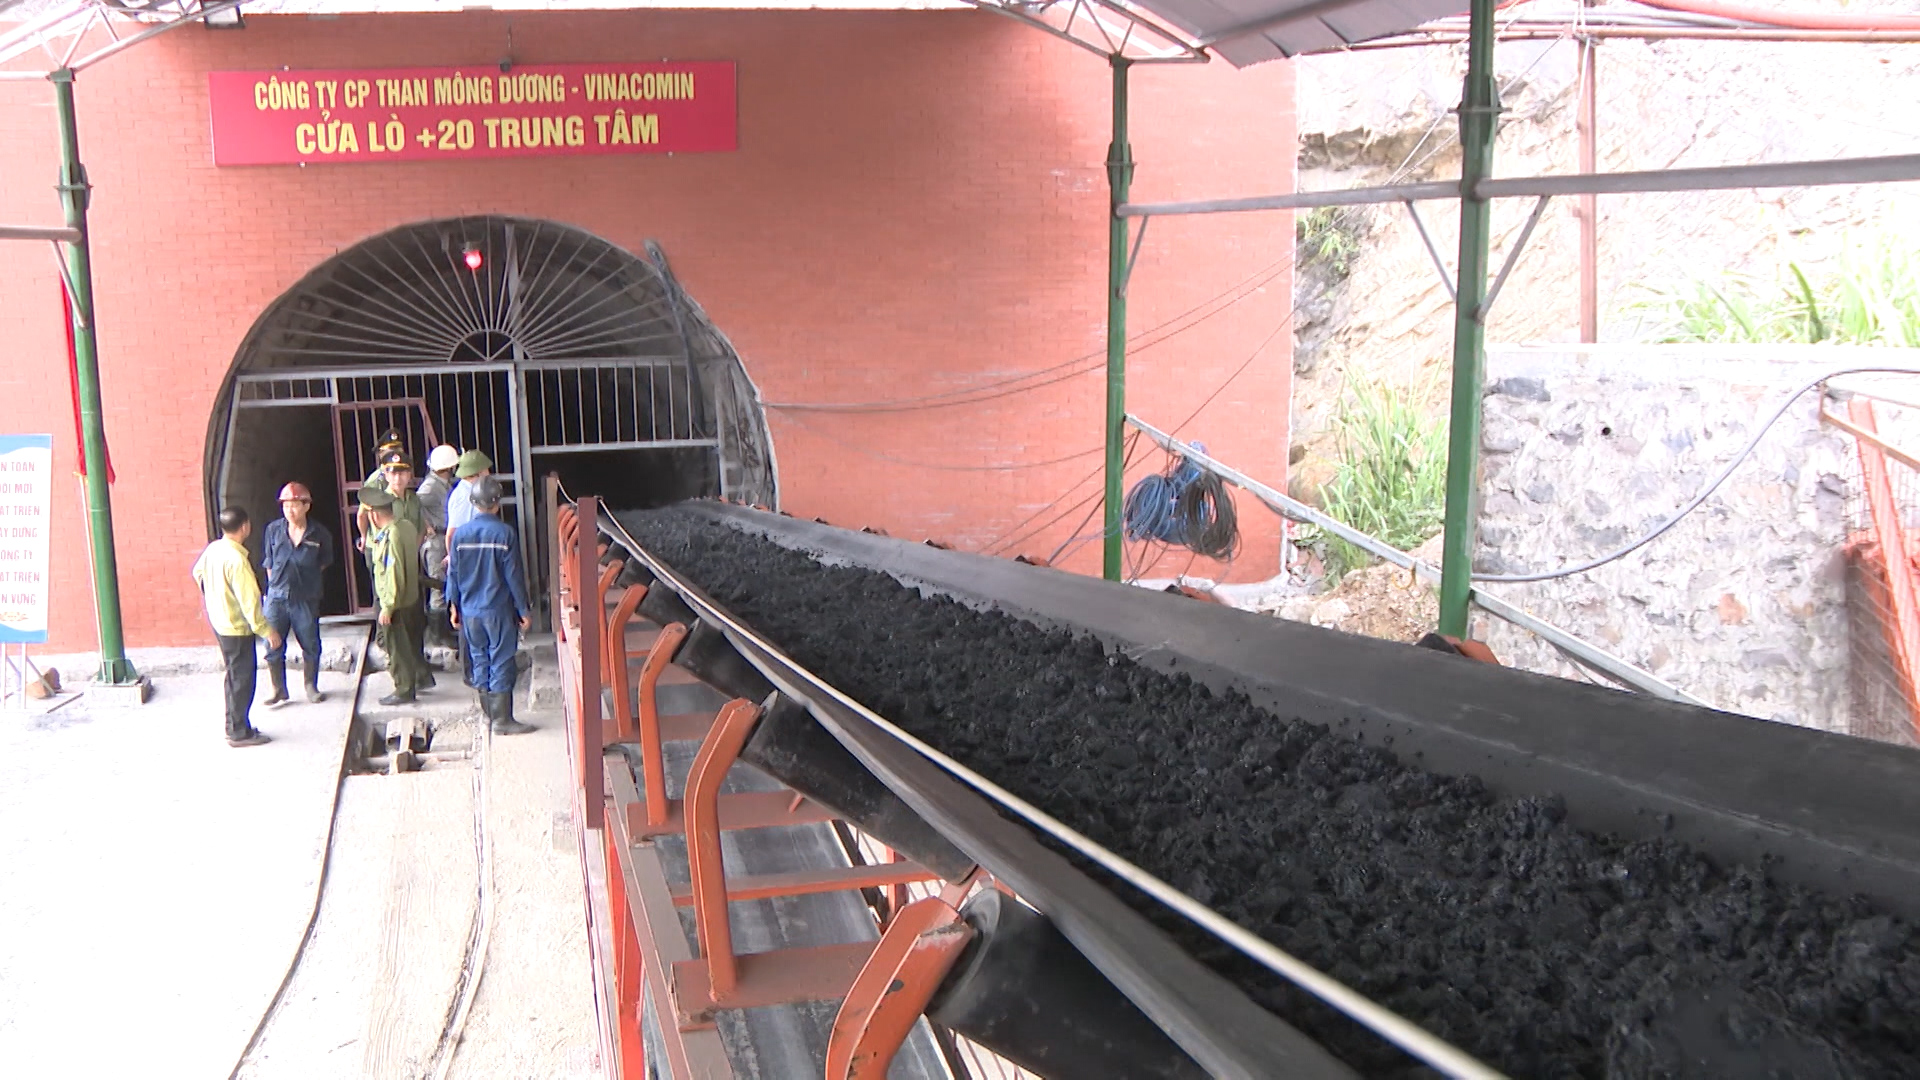 Băng tải hóa hệ thống vận chuyển than hầm lò ở Công ty CP than Mông Dương.